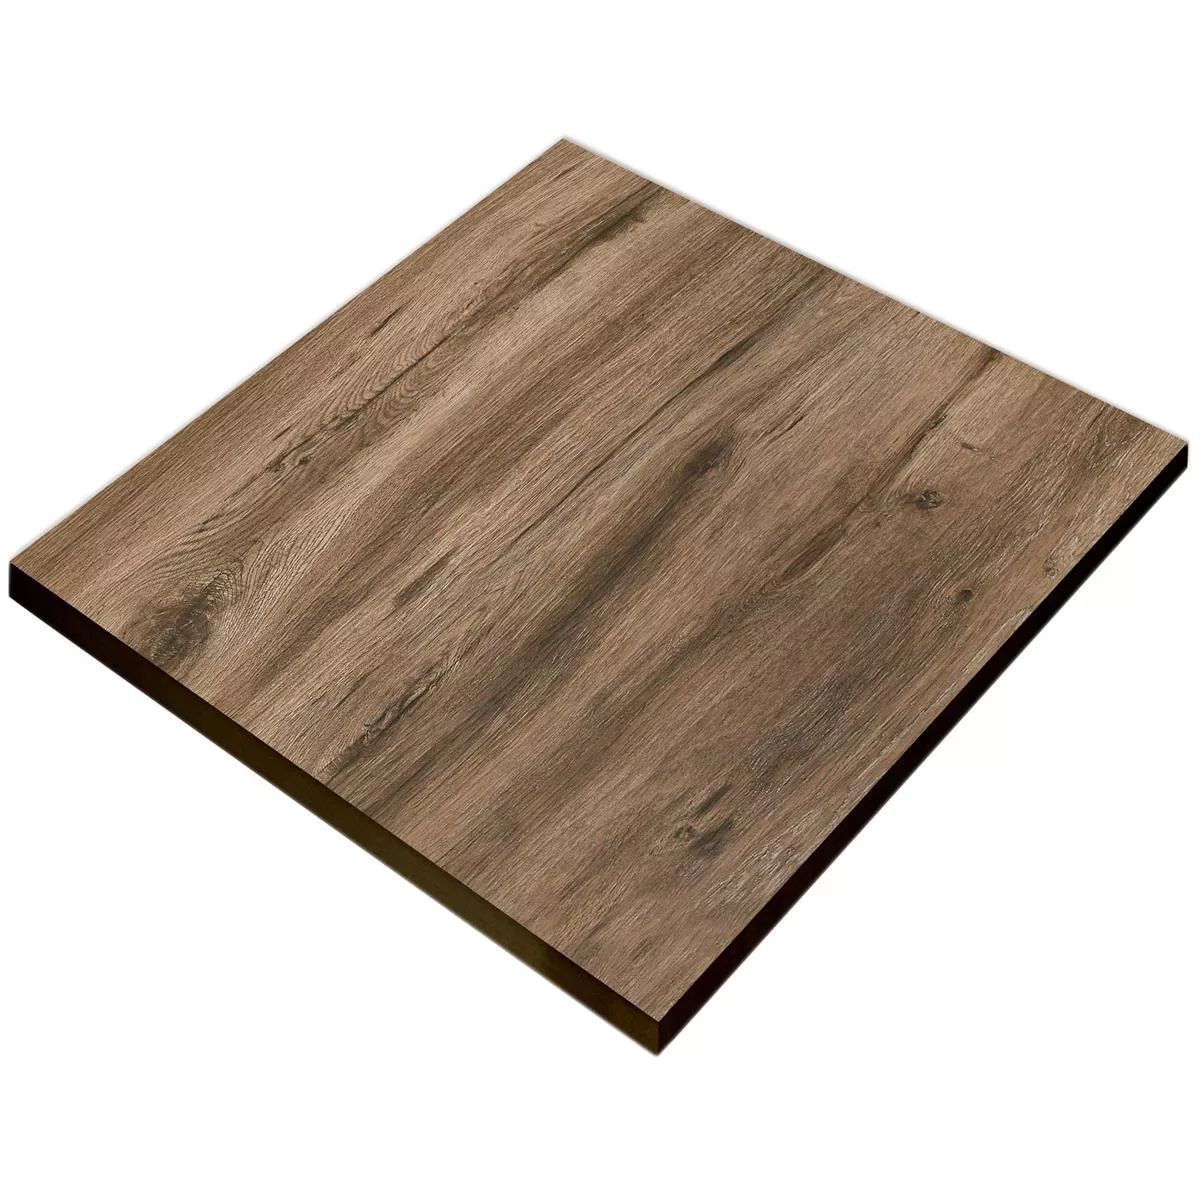 Vzorek Terasové Desky Starwood Dřevěný Vzhled Ebony 60x60cm